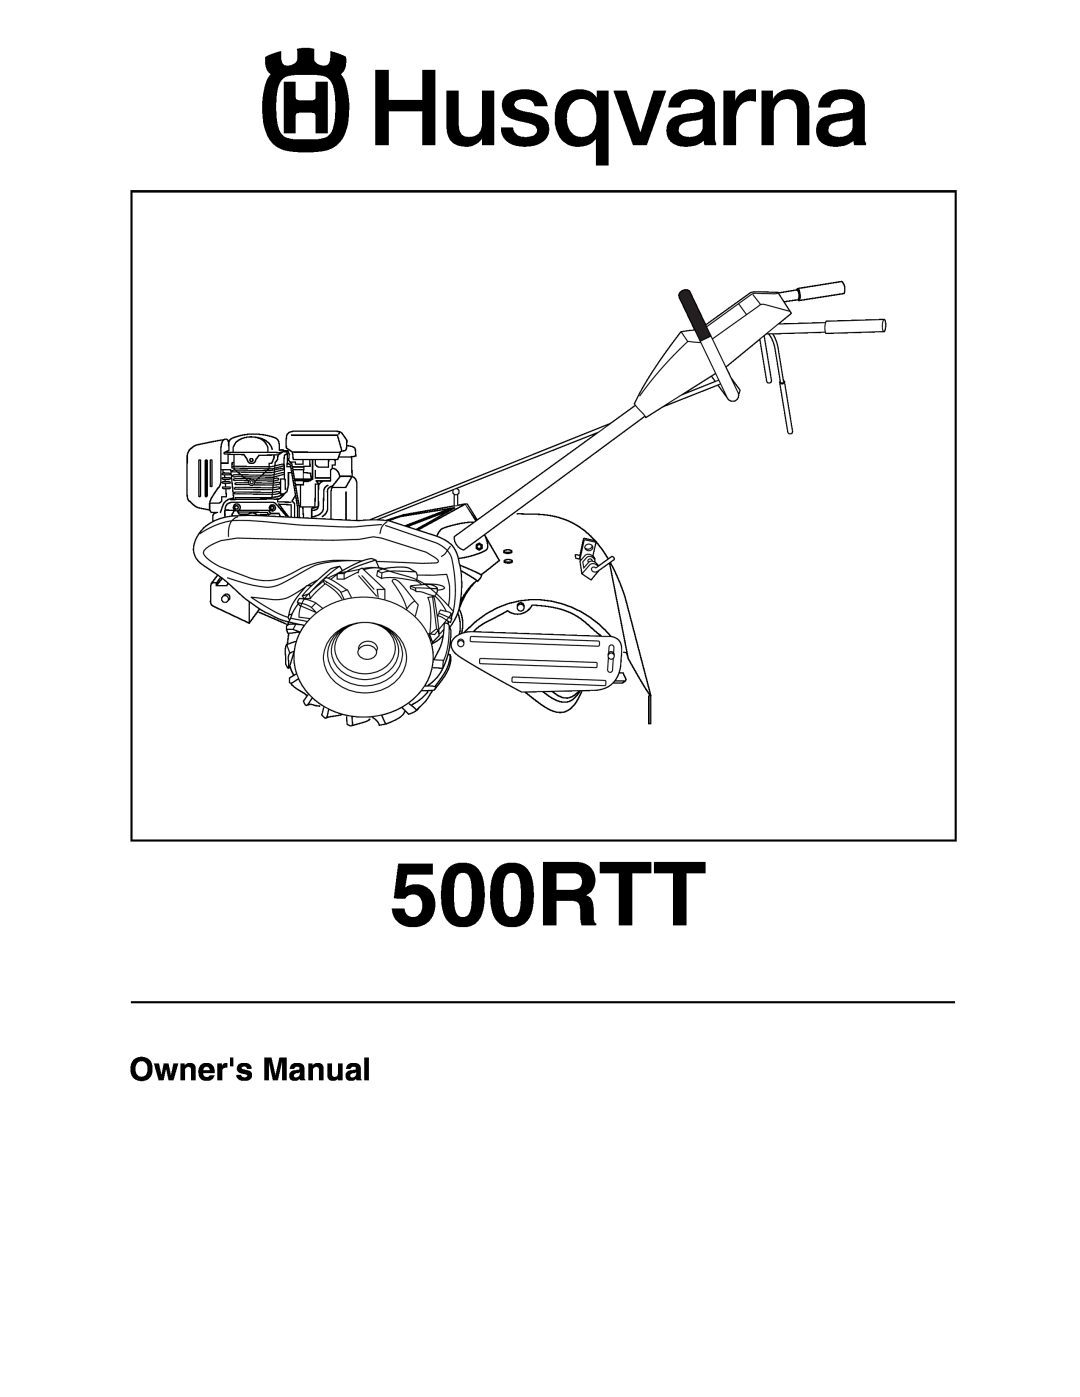 Husqvarna 500RTT owner manual Owners Manual 